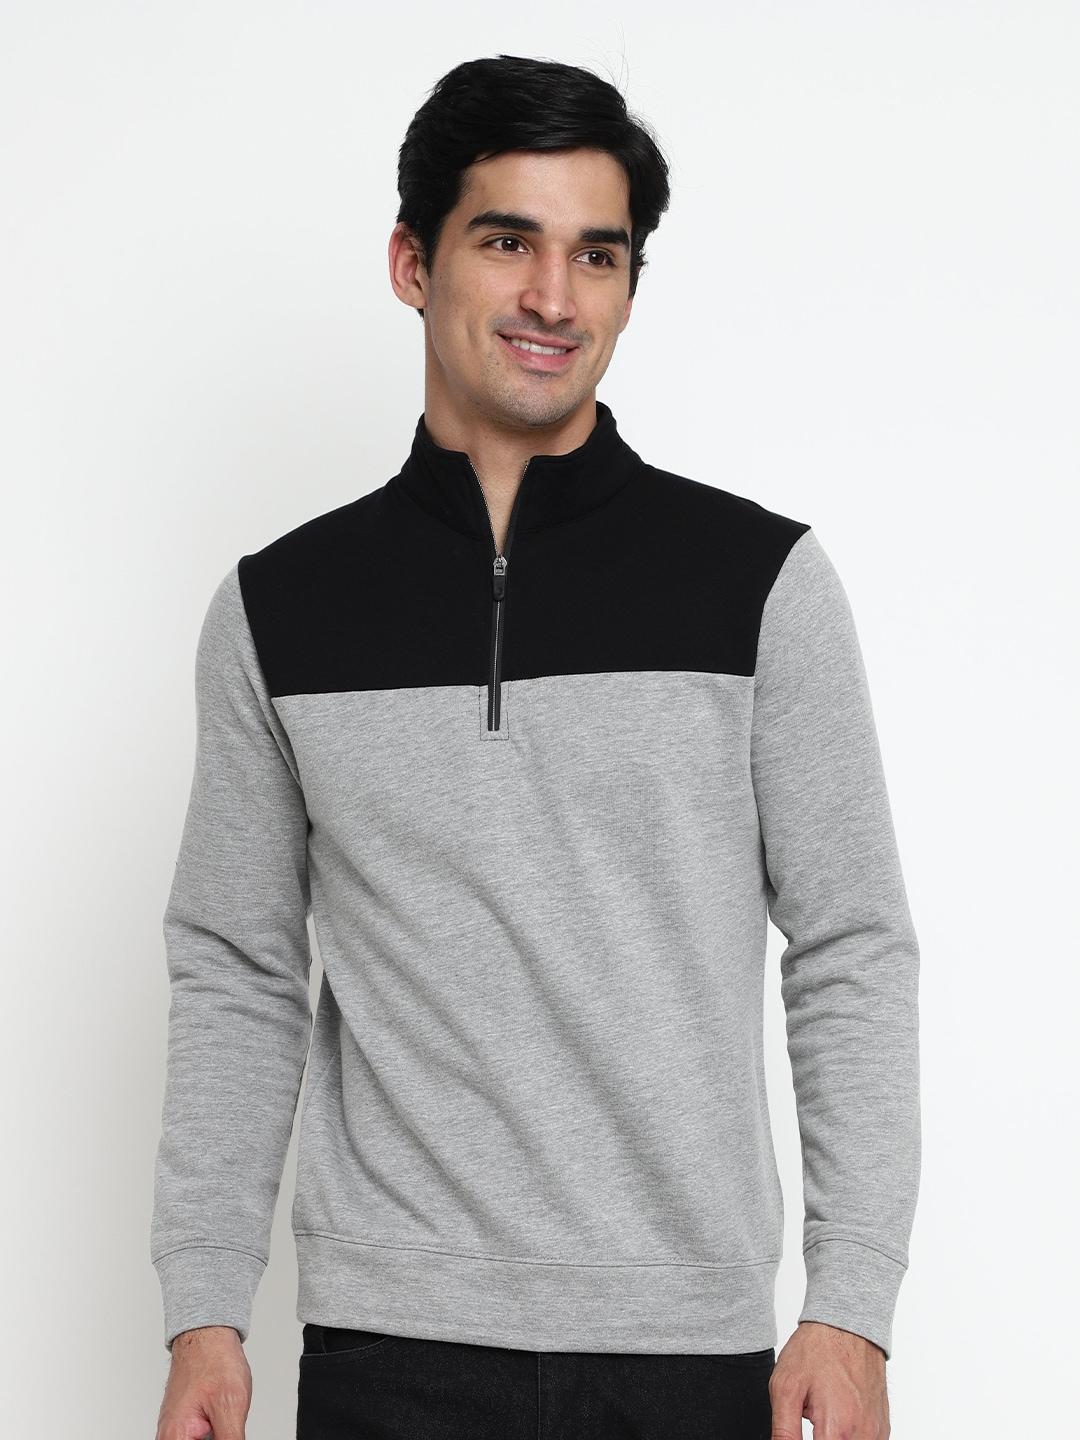 nimble colourblocked mock collar cotton pullover sweatshirt